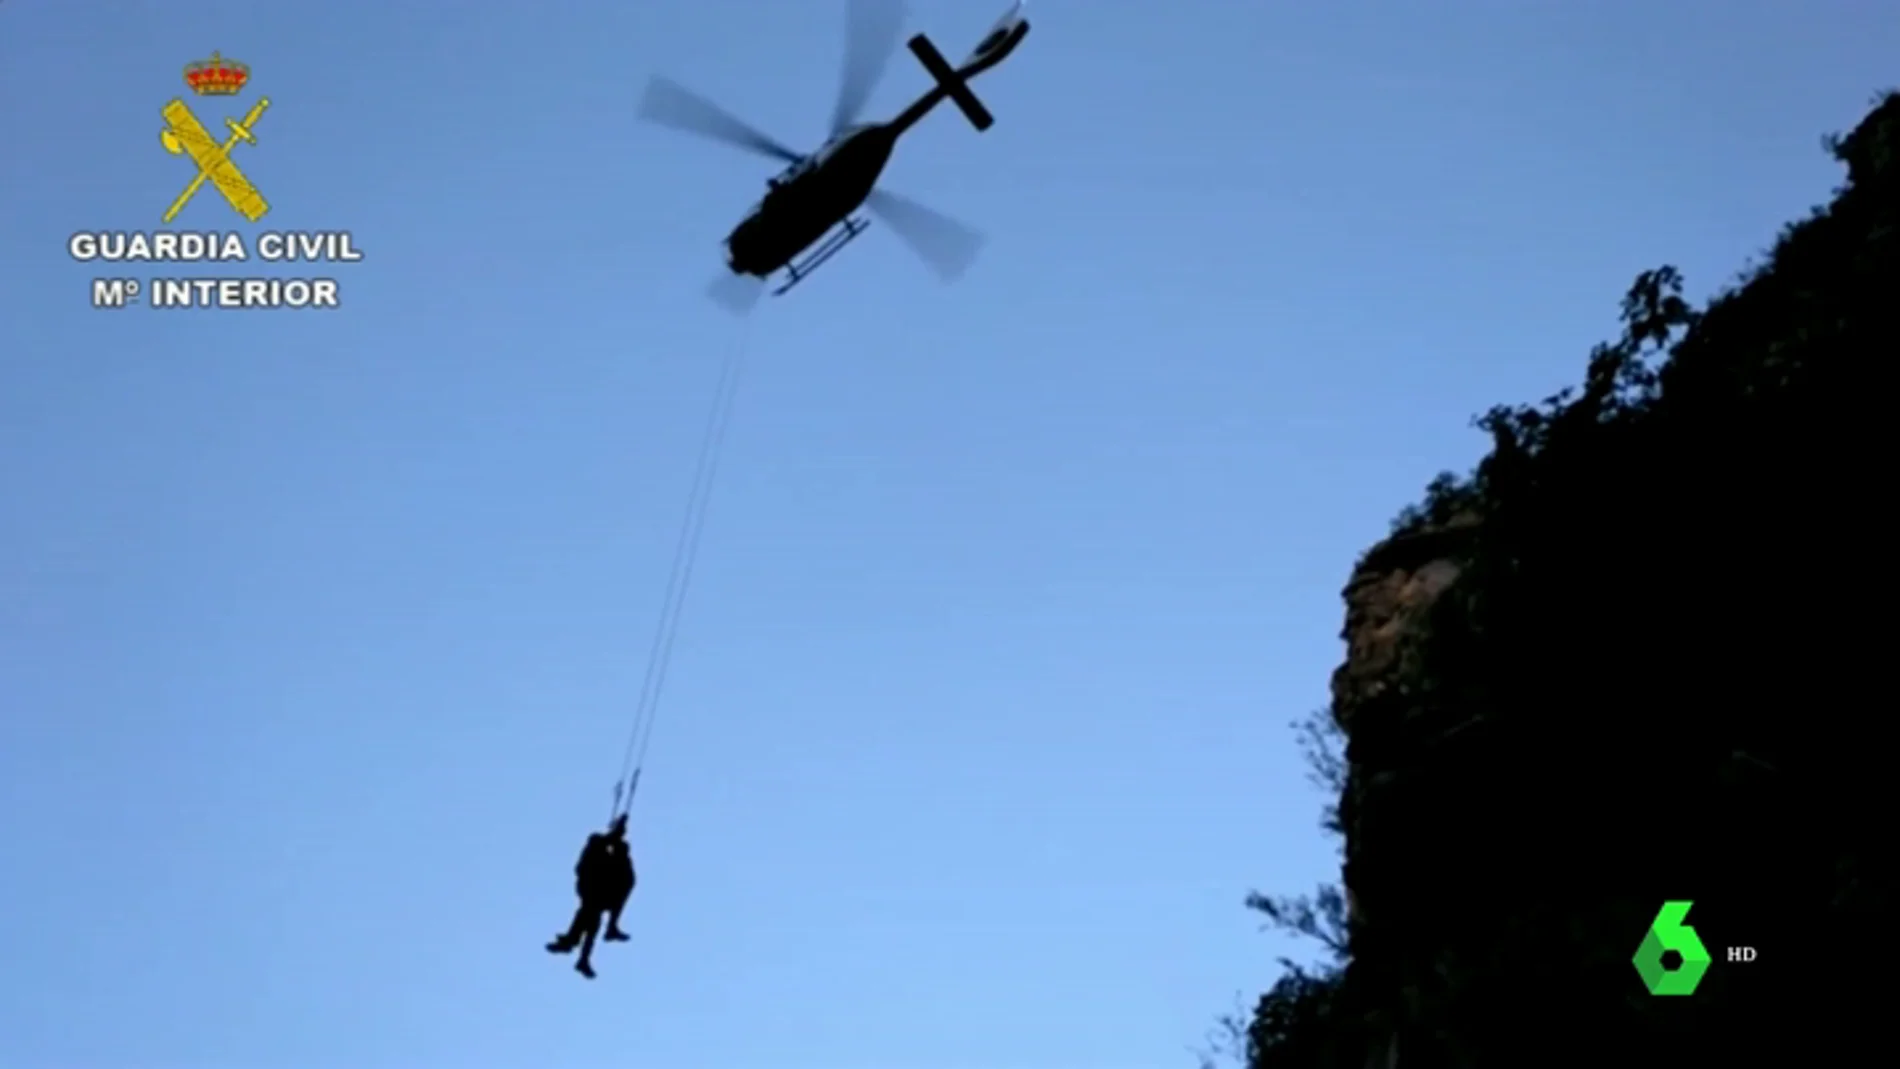 Montañero rescatado por un helicóptero en el barranco de Sax